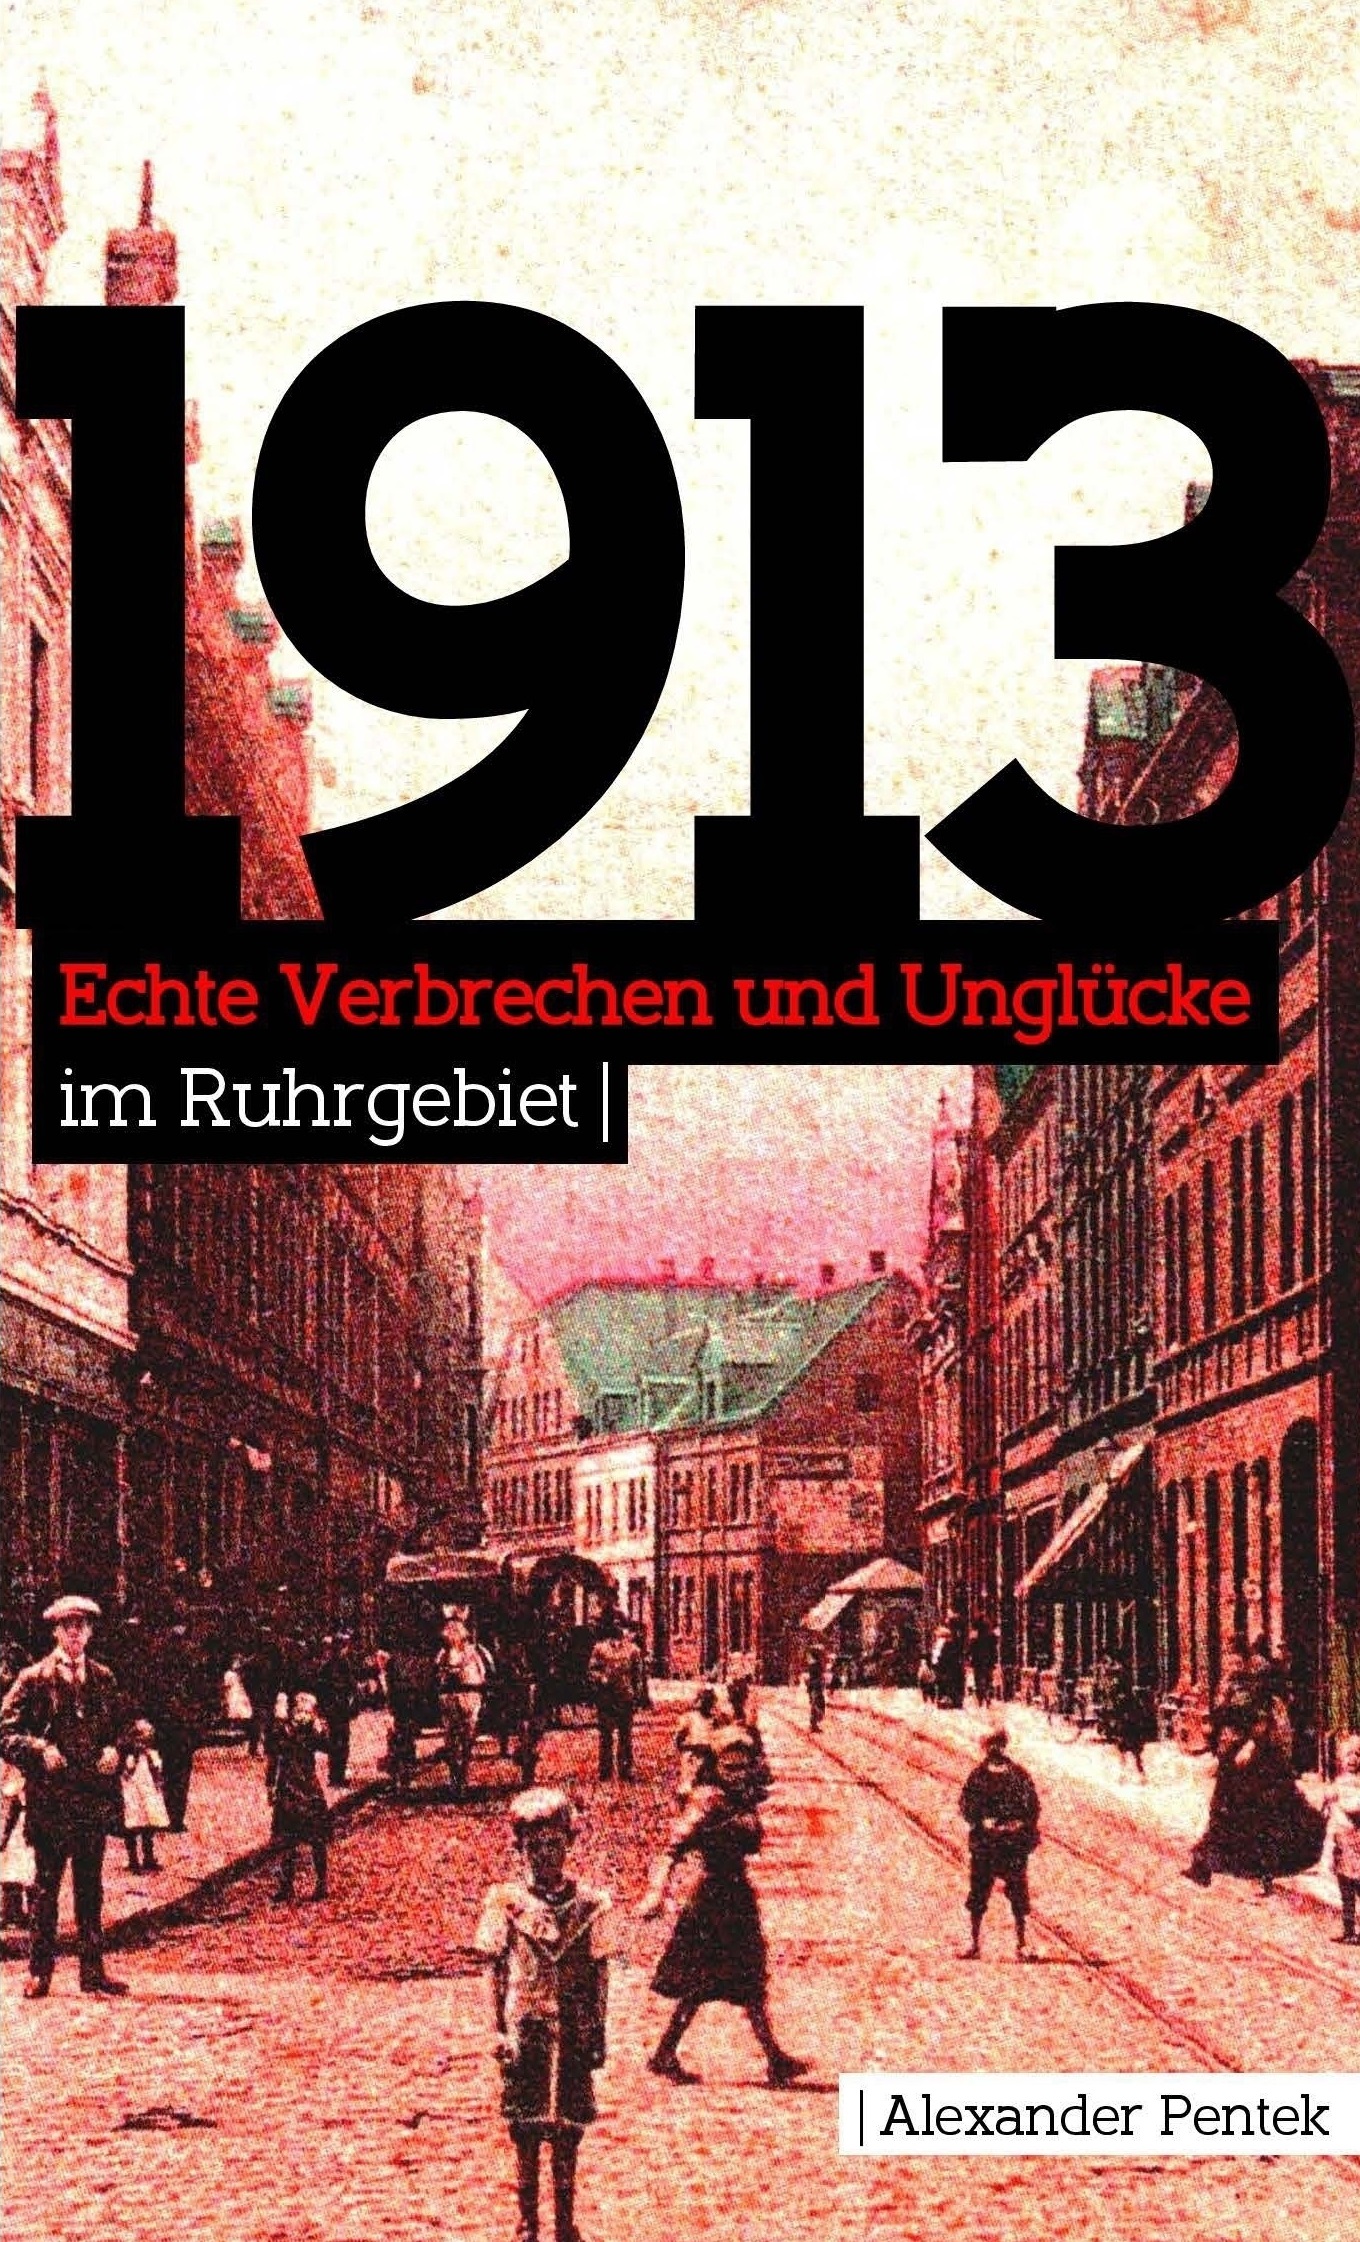 „1913“ – Echte Verbrechen und Unglücke im Ruhrgebiet